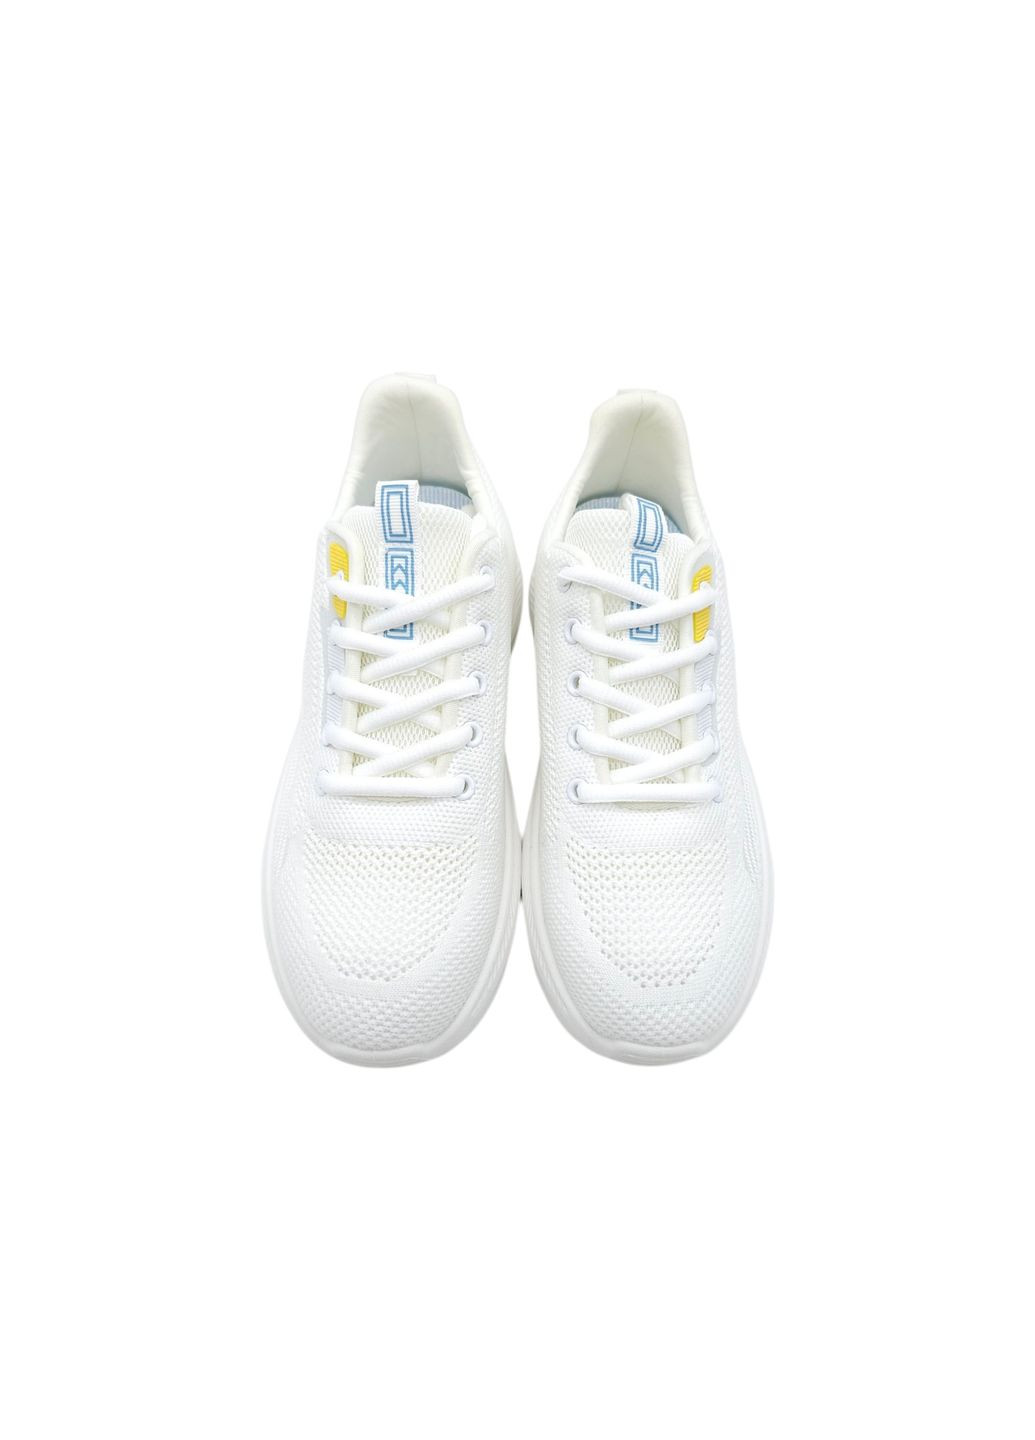 Білі всесезонні жіночі кросівки білі текстиль l-16-41 23,5 см (р) Lonza